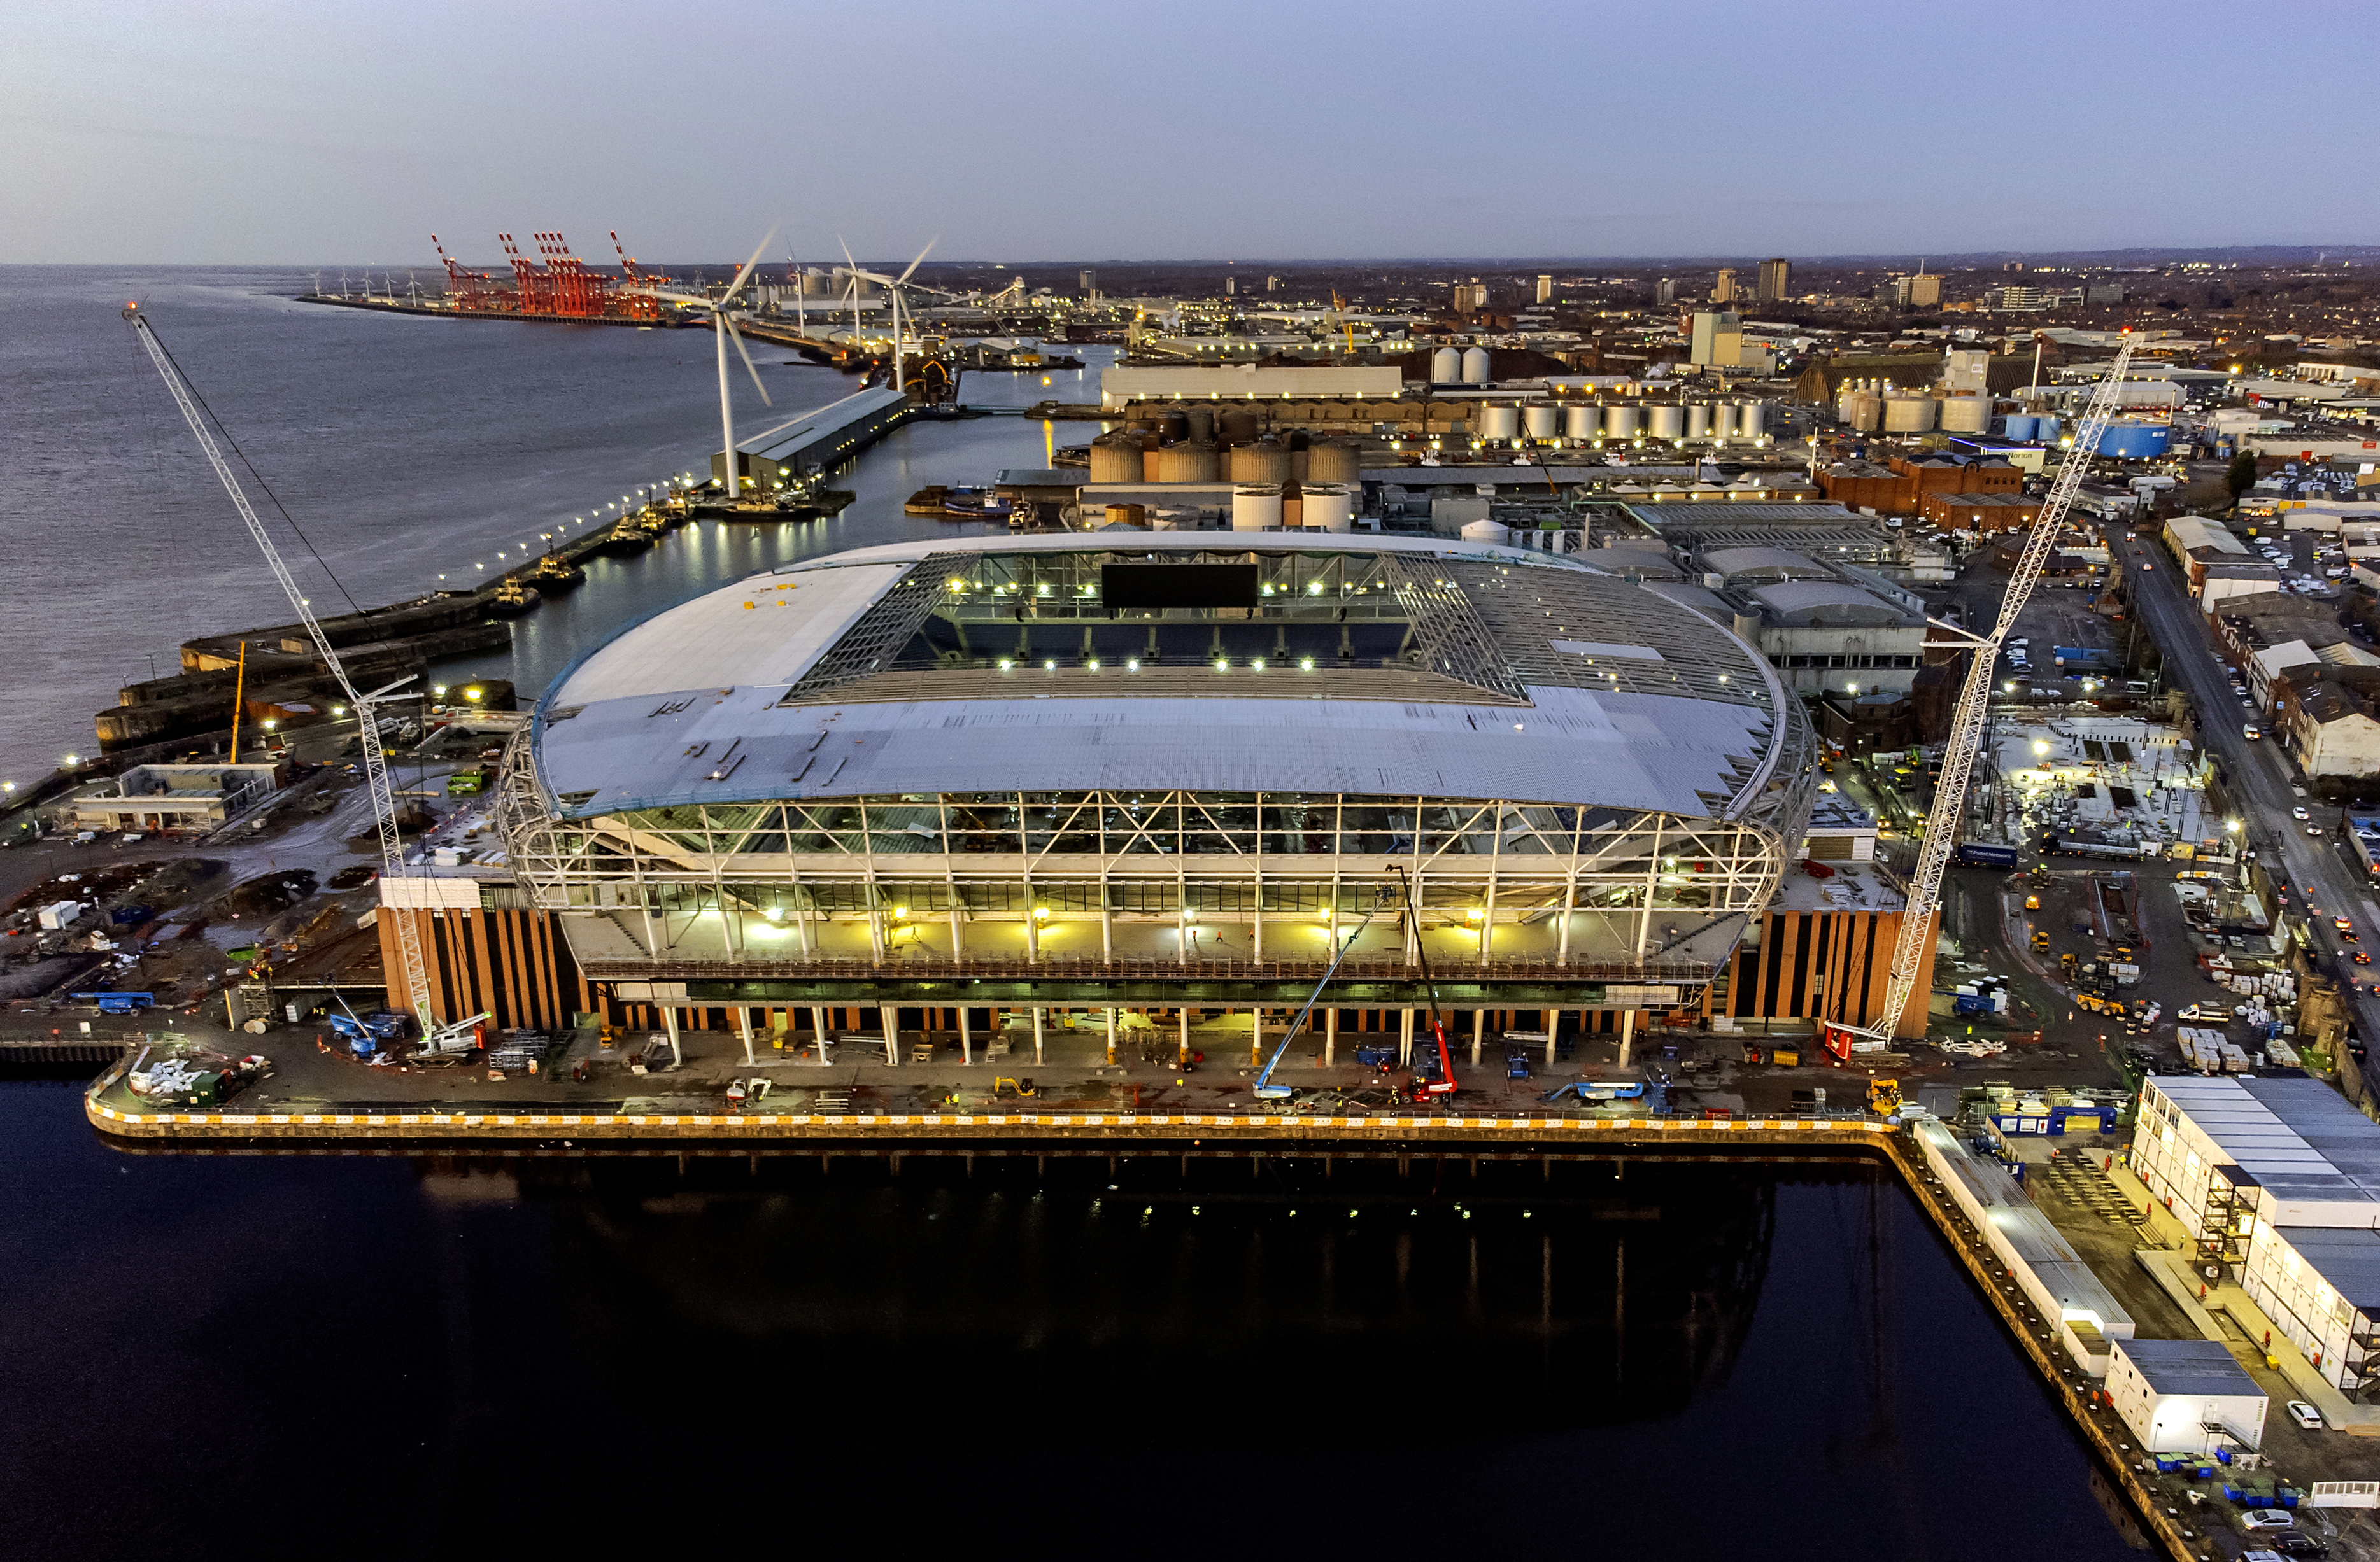 Evertons neues Stadion wird unglaubliche 500 Millionen Pfund kosten